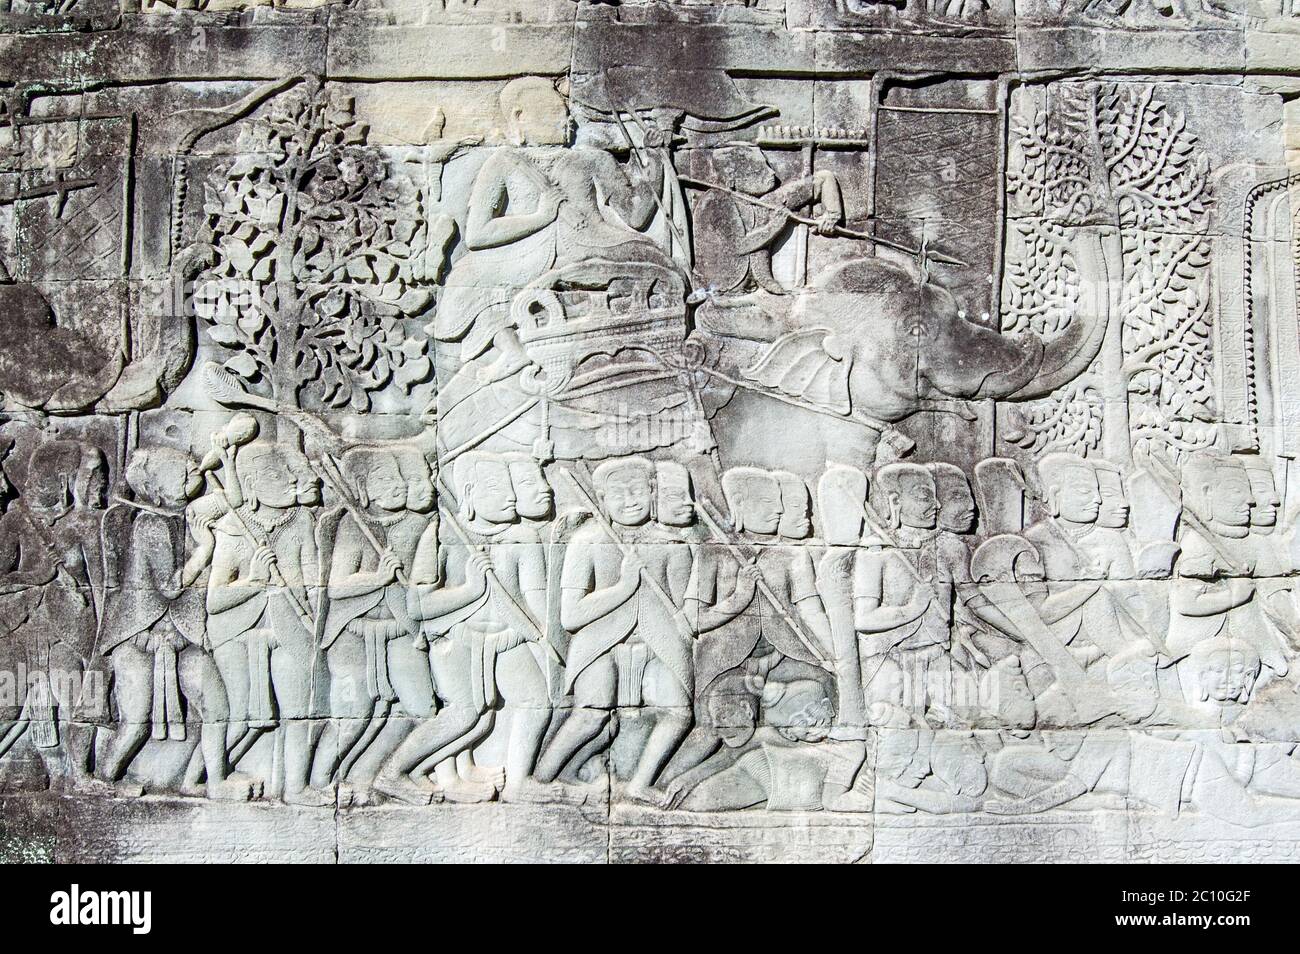 Antico rilievo Khmer bassorilievo di un comandante dell'esercito che cavalcava un elefante in battaglia. Parete esterna del Tempio di Bayon, Angkor Thom, Siem Reap, Cambogia. Foto Stock